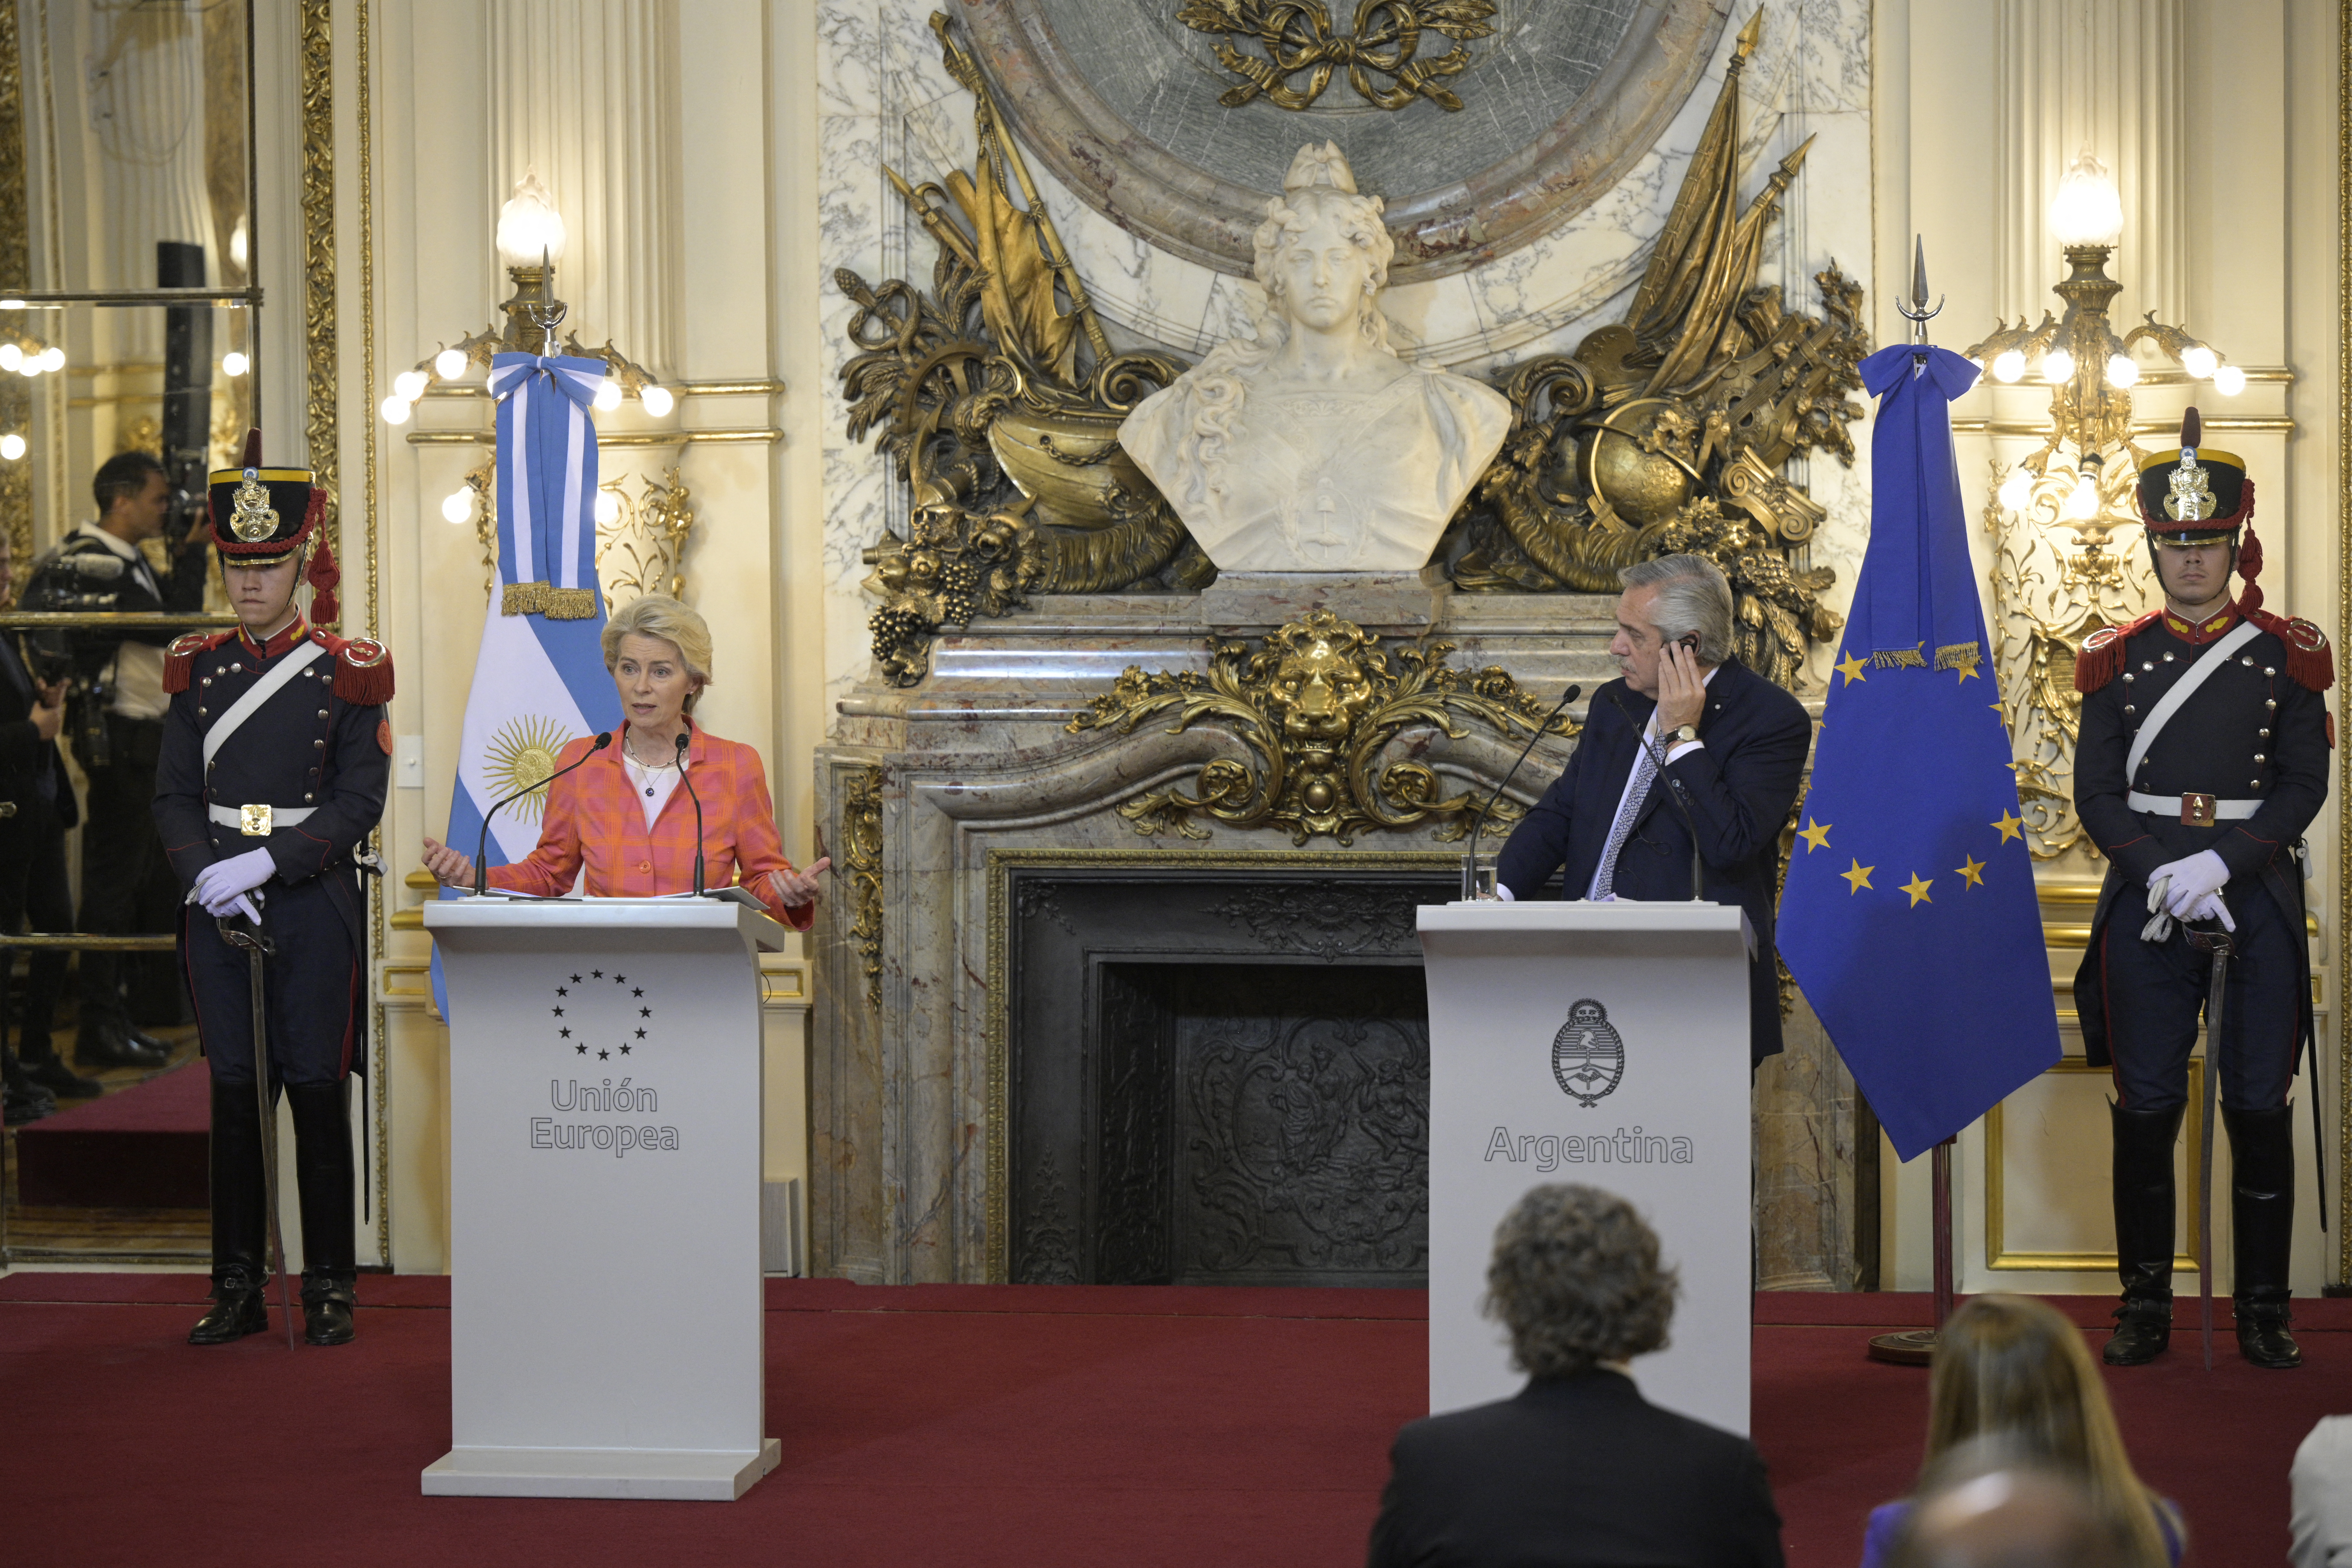 Υπέρ της συμφωνίας ΕΕ-Mercosur για το εμπόριο τάχθηκε η Ούρσουλα φον ντερ Λάιεν κατά την επίσκεψή της στην Αργεντινή